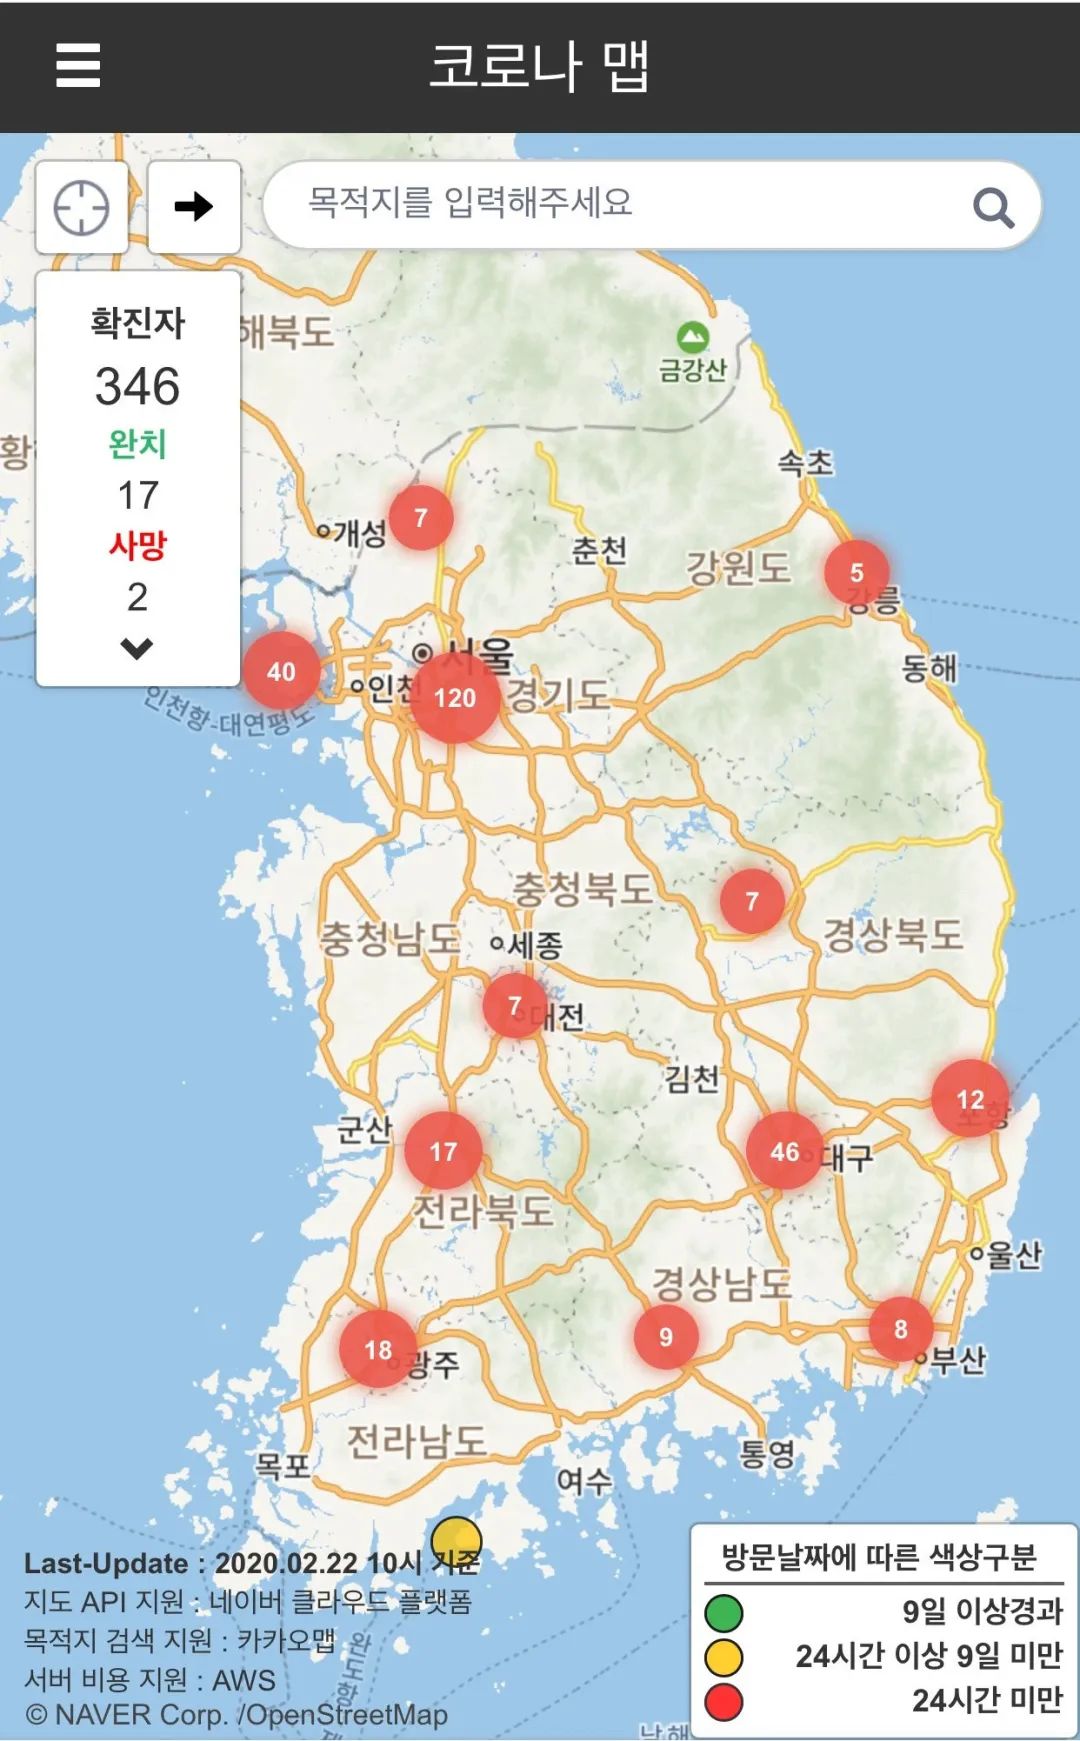 韩国疫情日益严重,确诊患者增加了142人